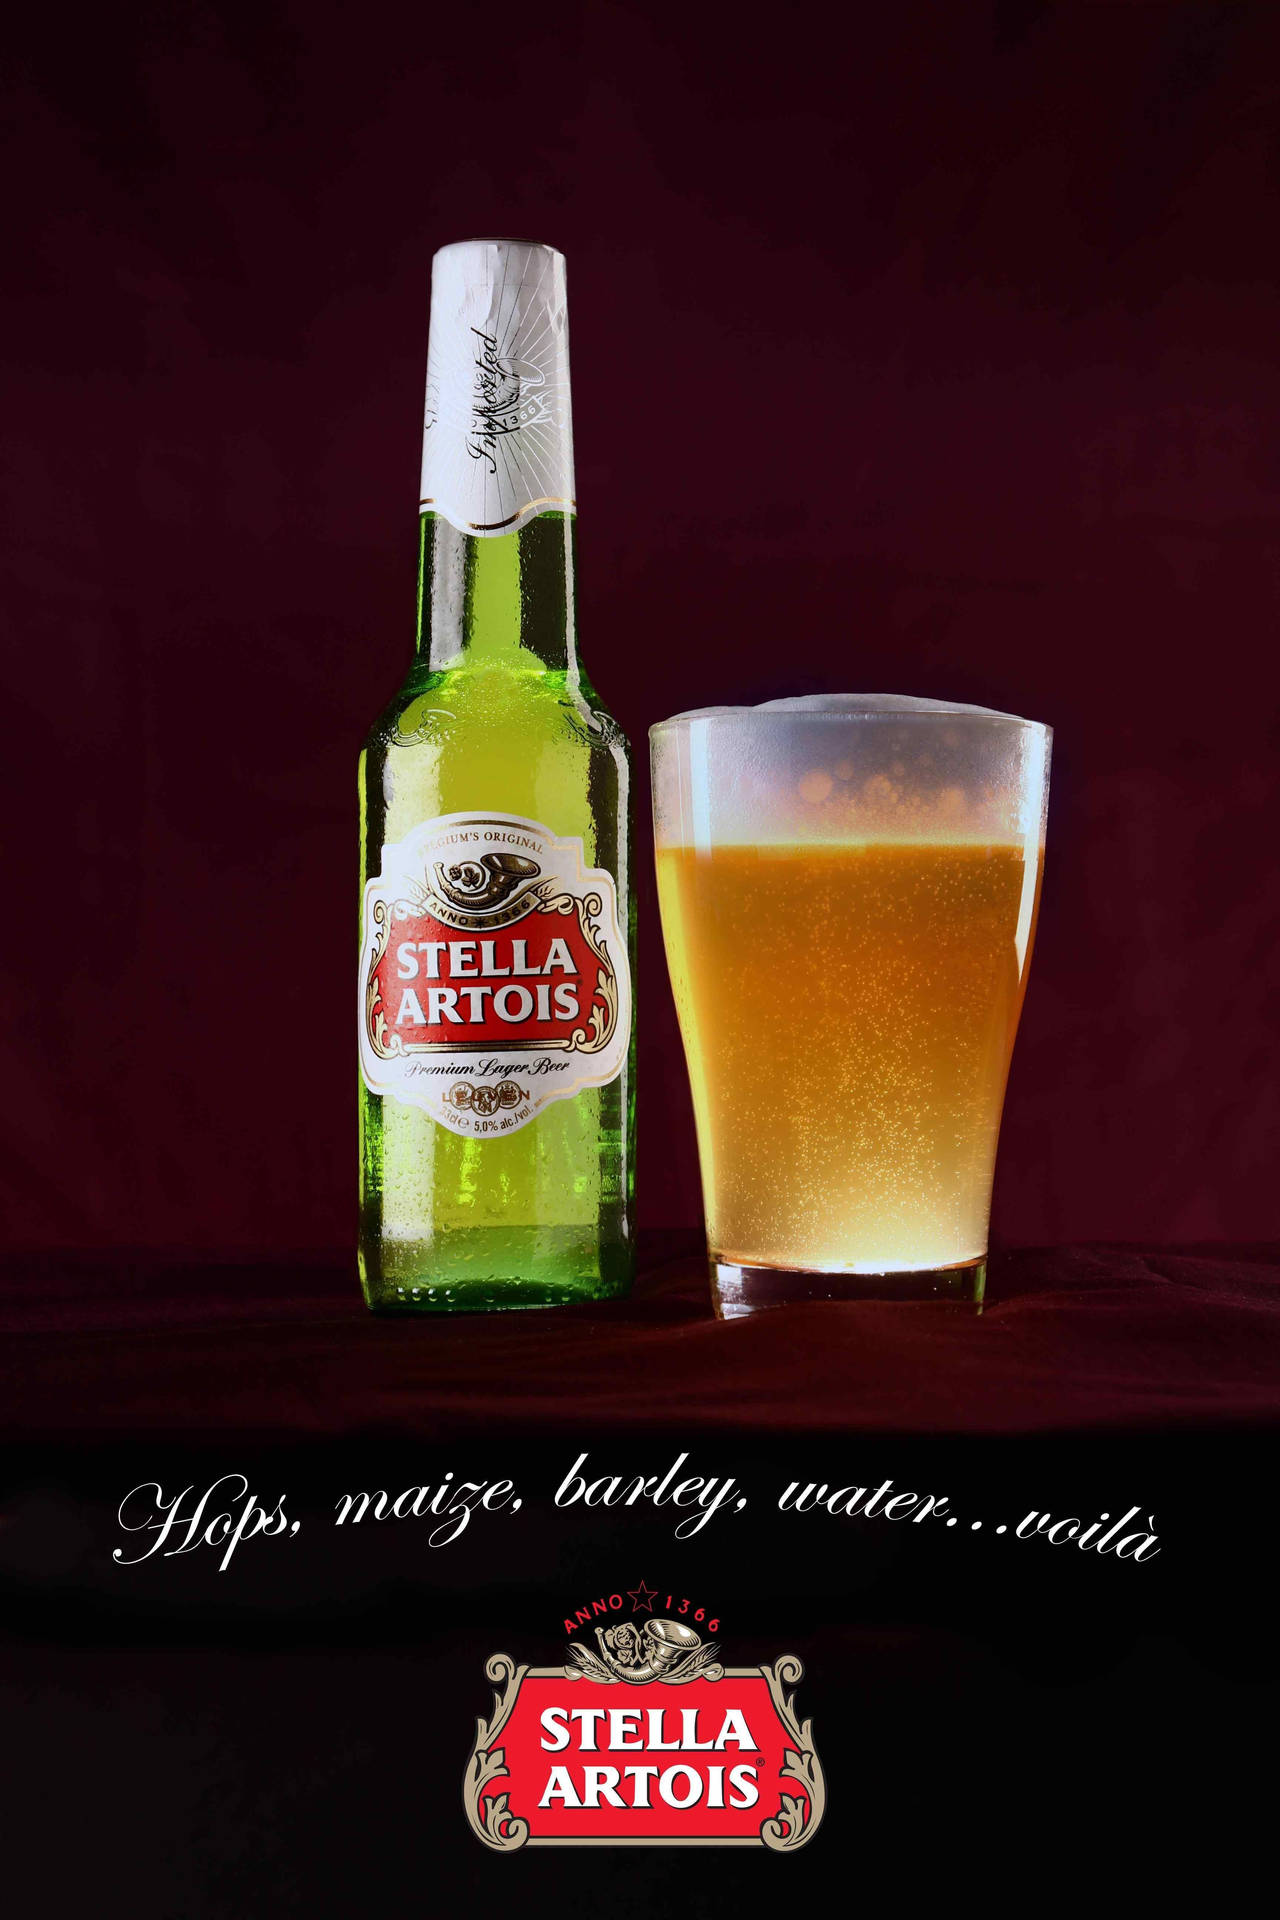 Stella Artois Liquor In Bottle And Glass Wallpaper